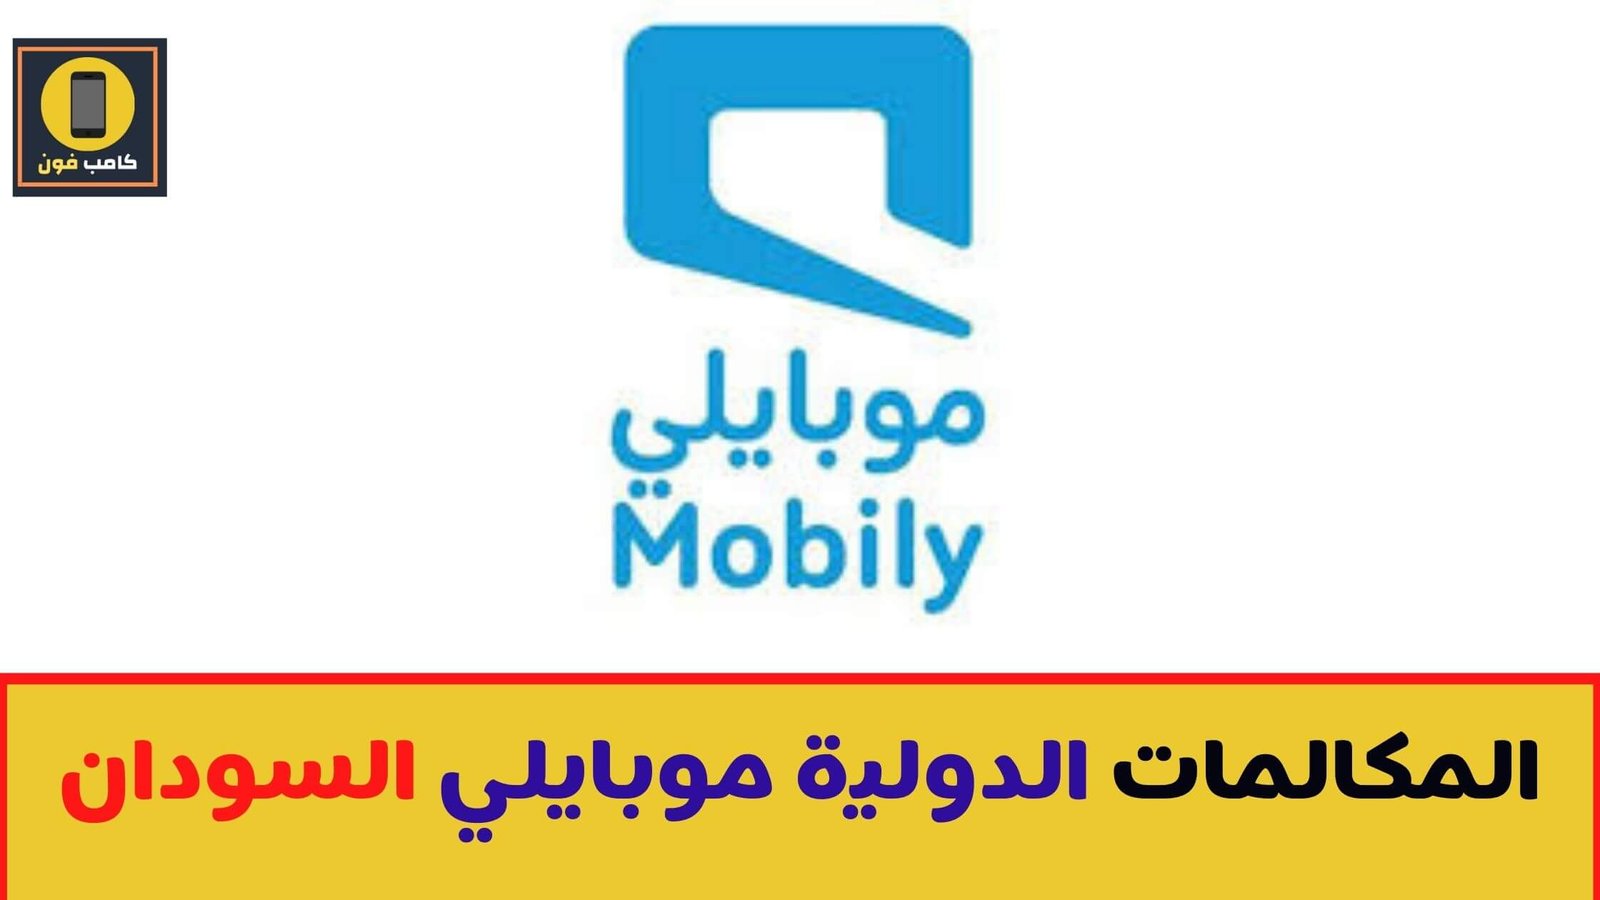 الدولية عروض مصر للمكالمات موبايلي عرض موبايلي